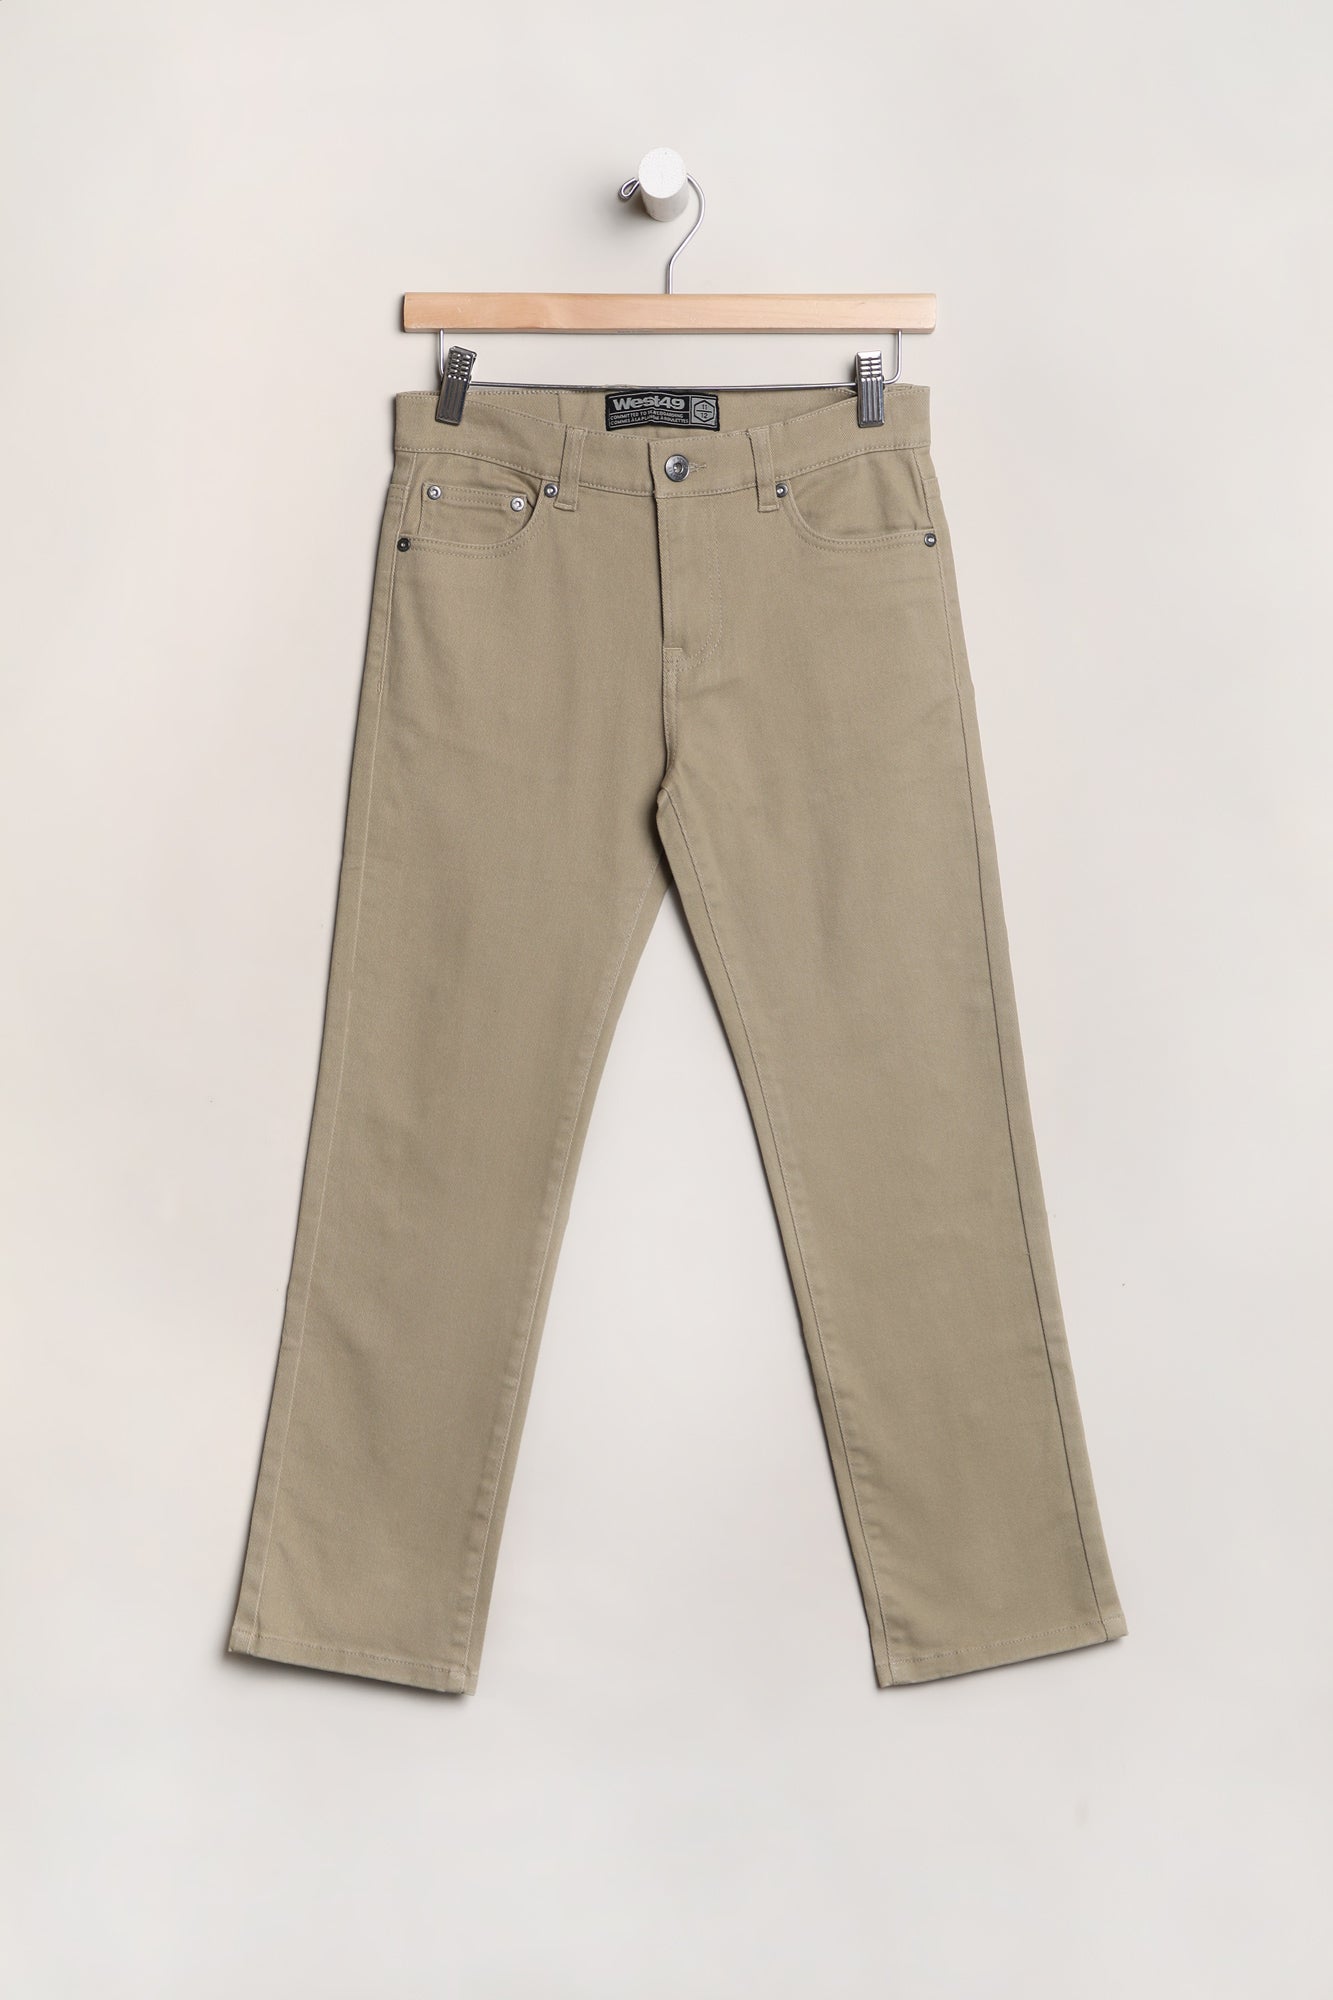 West49 Youth Bull Denim Slim Jeans - Khaki /